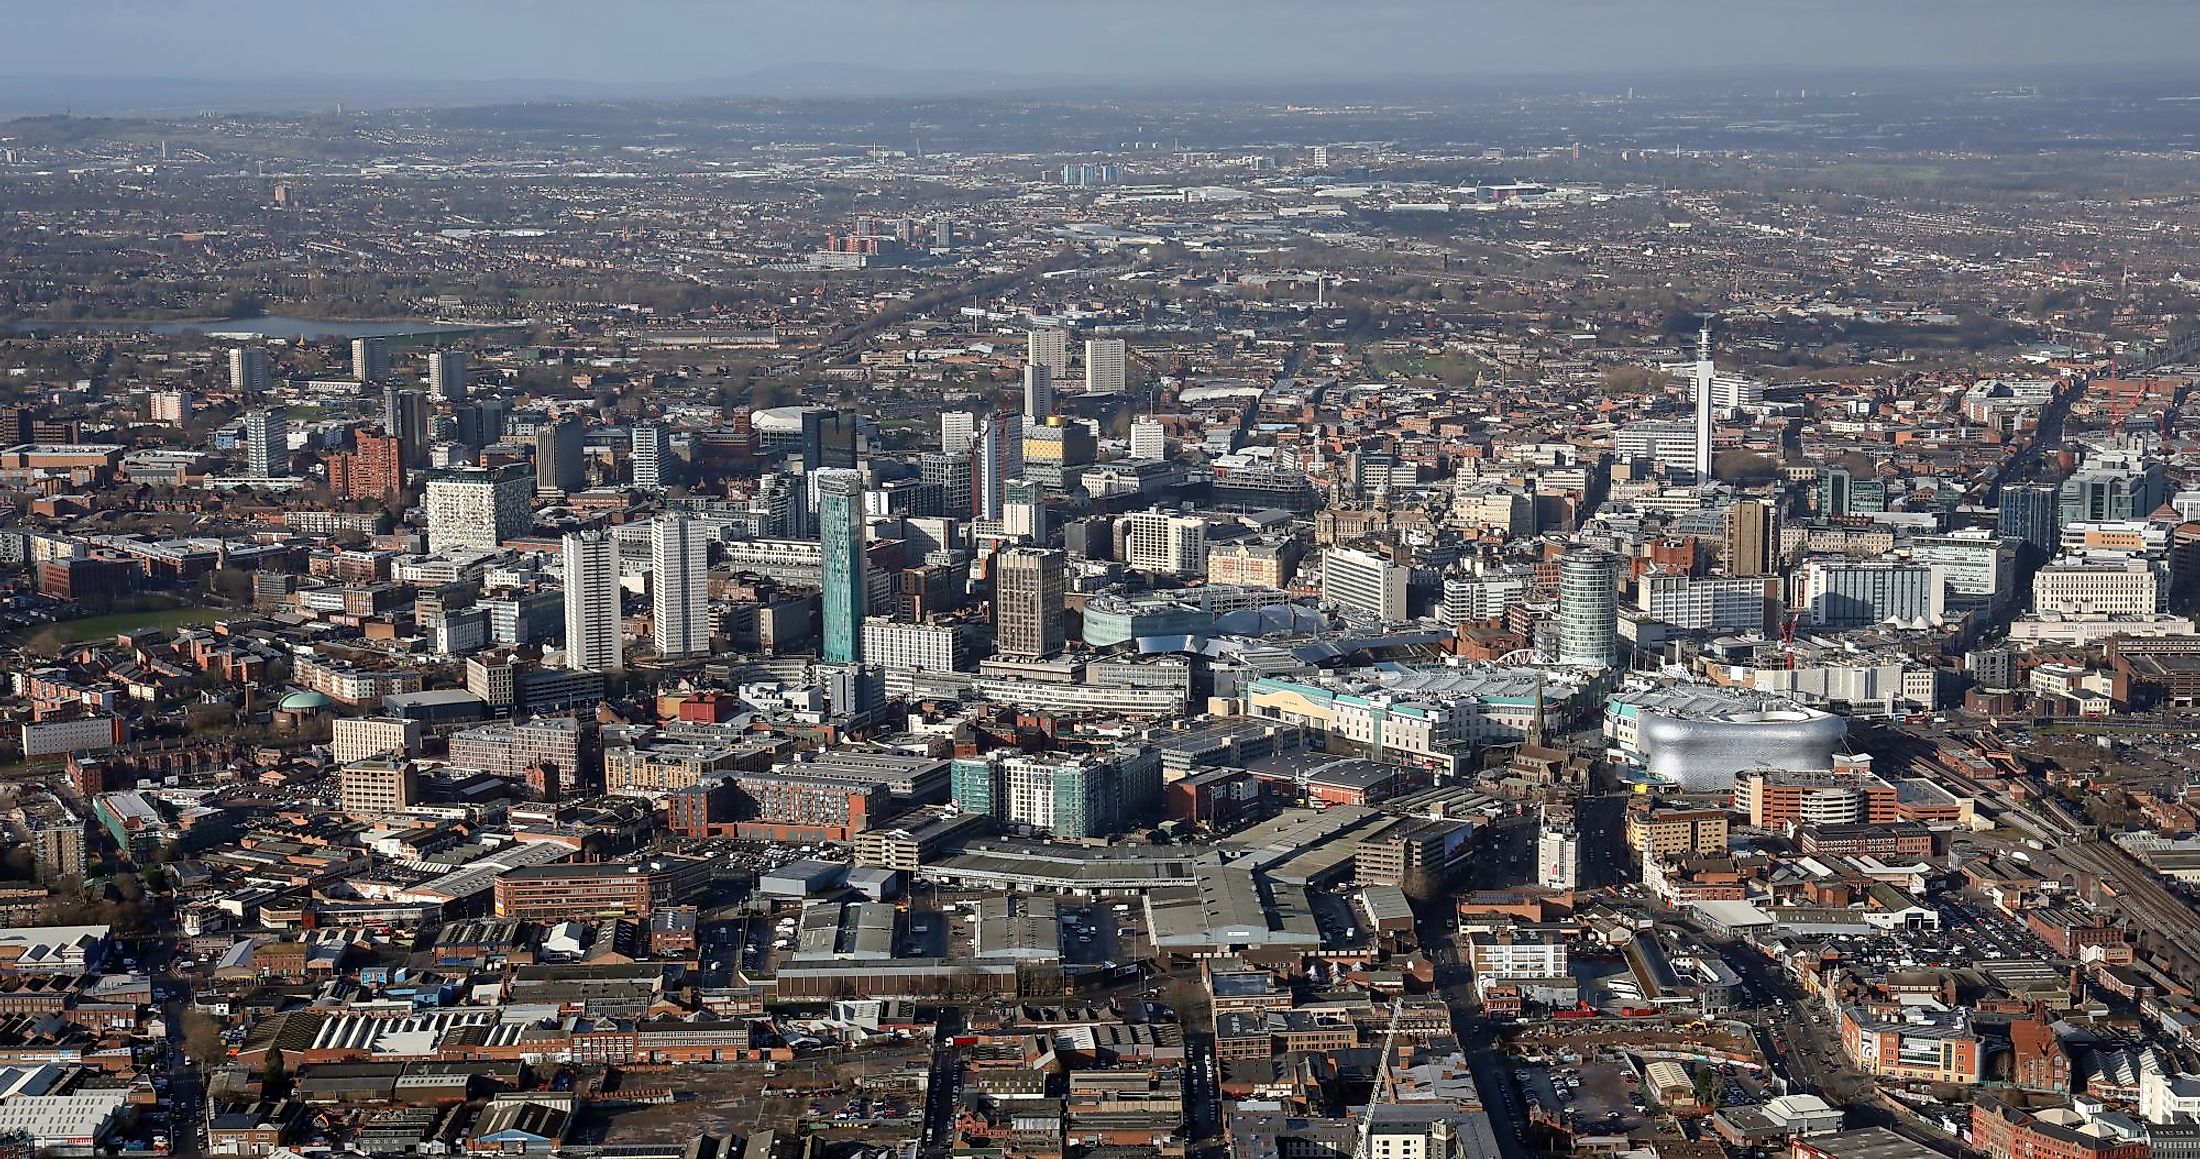 Aerial view of Birmingham city center skyline.